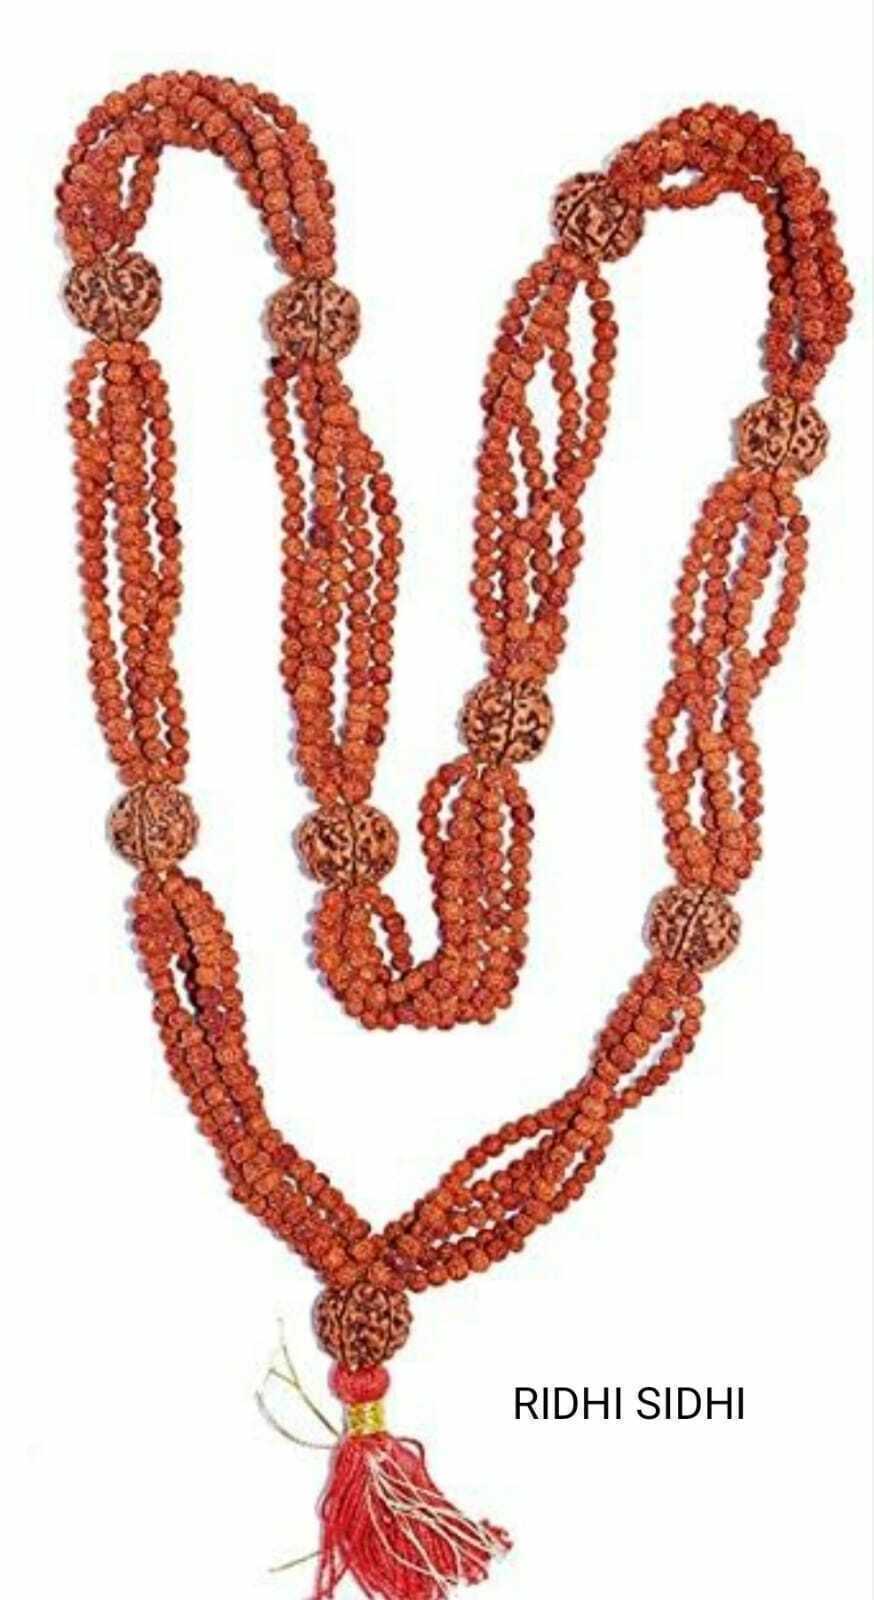 Lord SHIVA Most POWERFUL Kantha Mala Very Rare 1008 Beads,5 Mukhi Rudraksha Mala